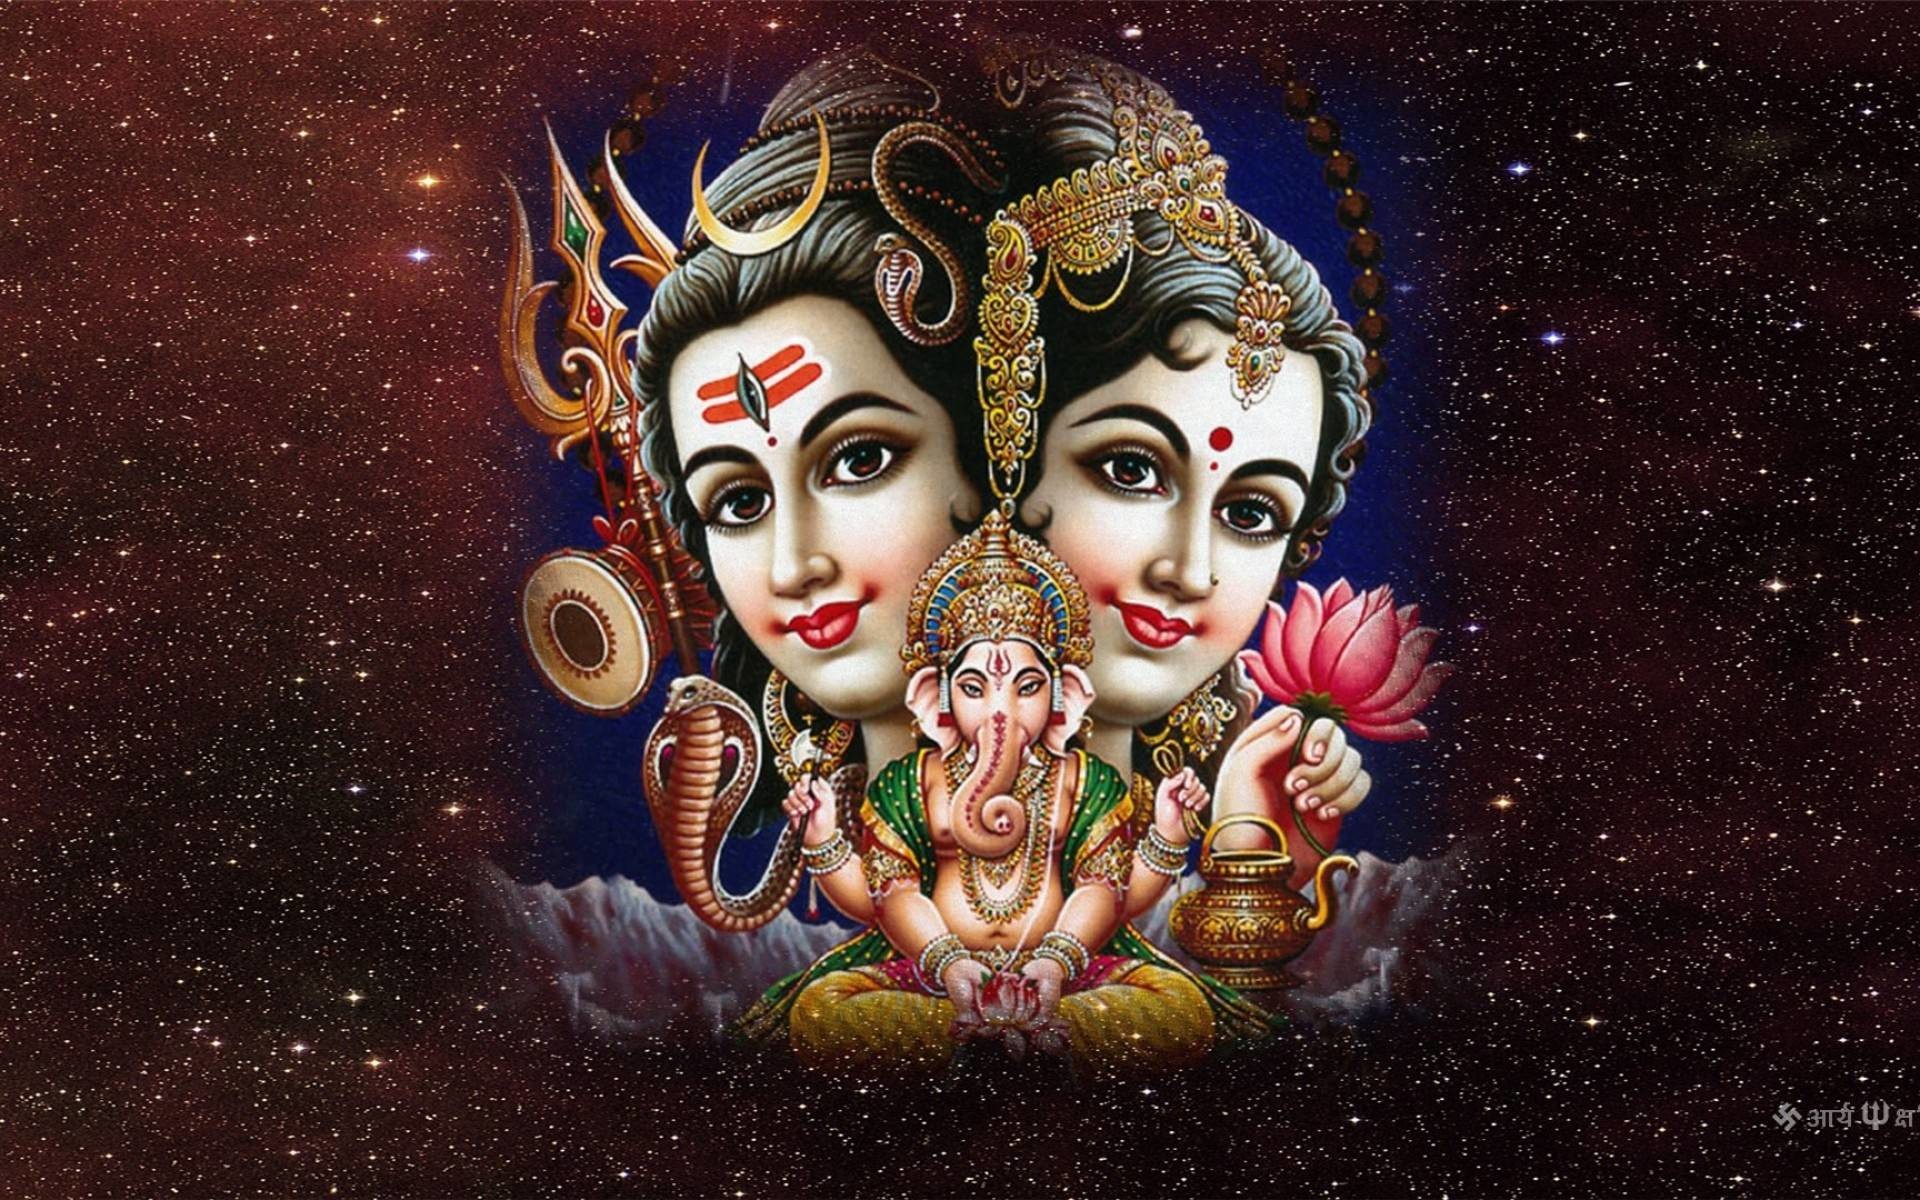 Hindu God Hanumaan 1920x1080 Pixels Full Hd Wallpapers - Hd Wallpaper